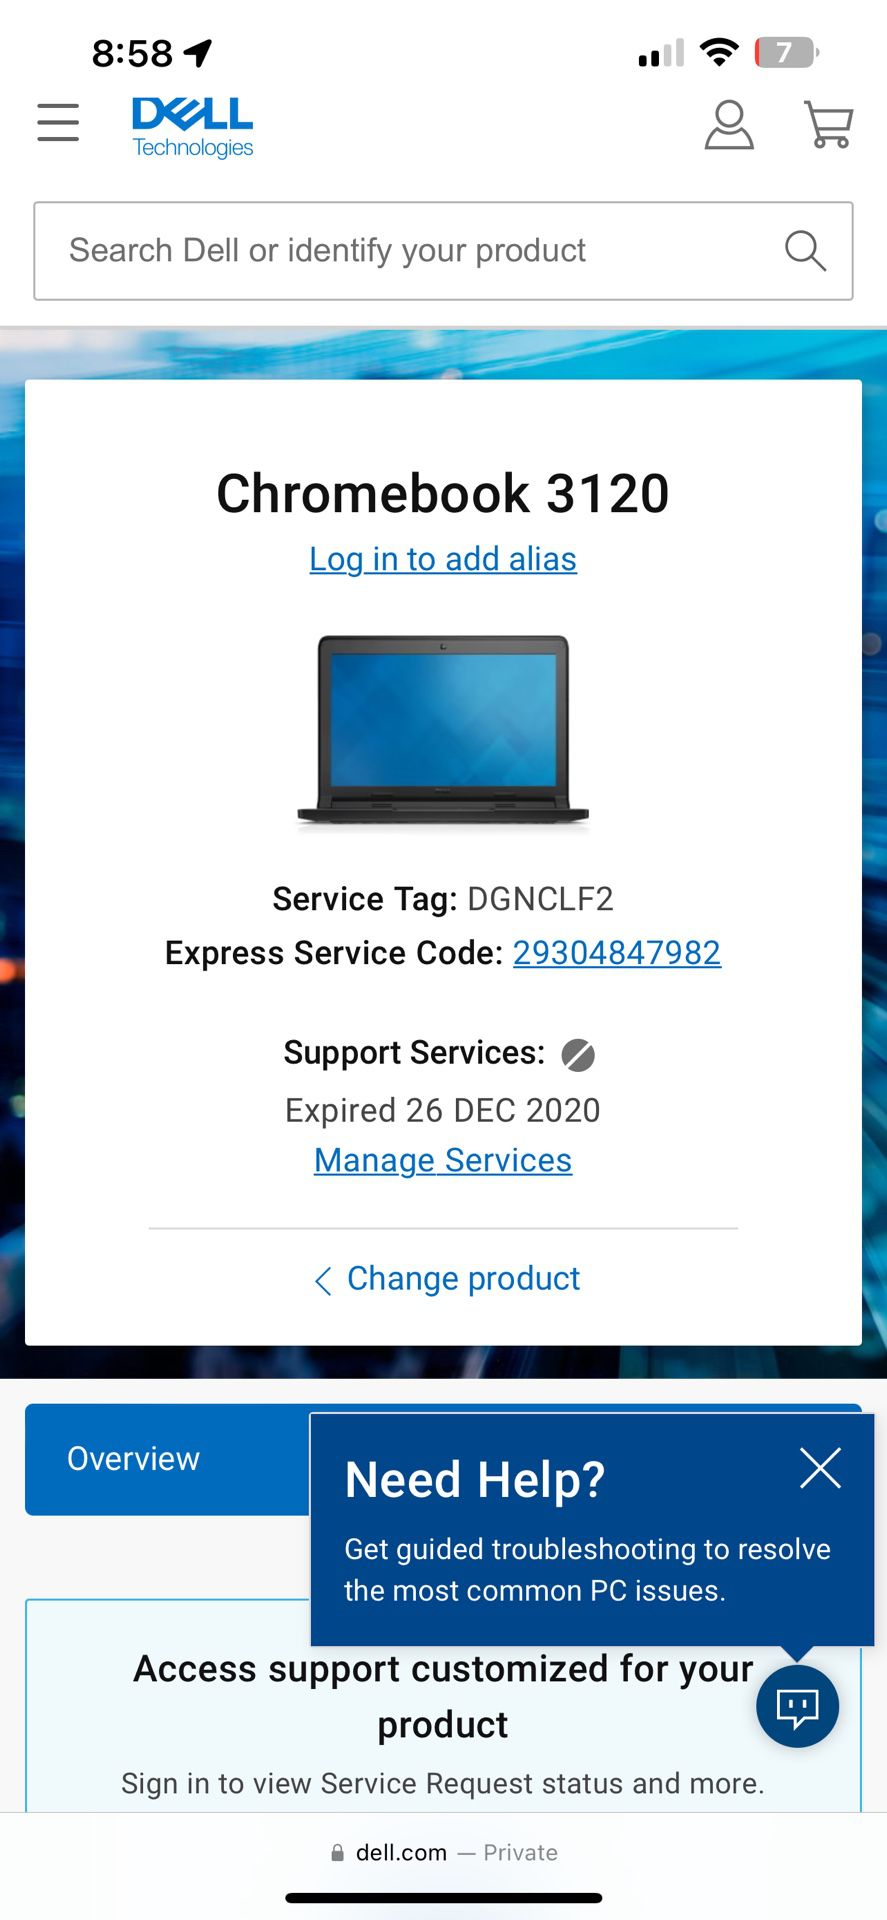 Chromebook Dell 3120-11.6" Touchscreen - Intel Celeron N2840 4GB RAM 16GB SSD – Bluetooth 4.0